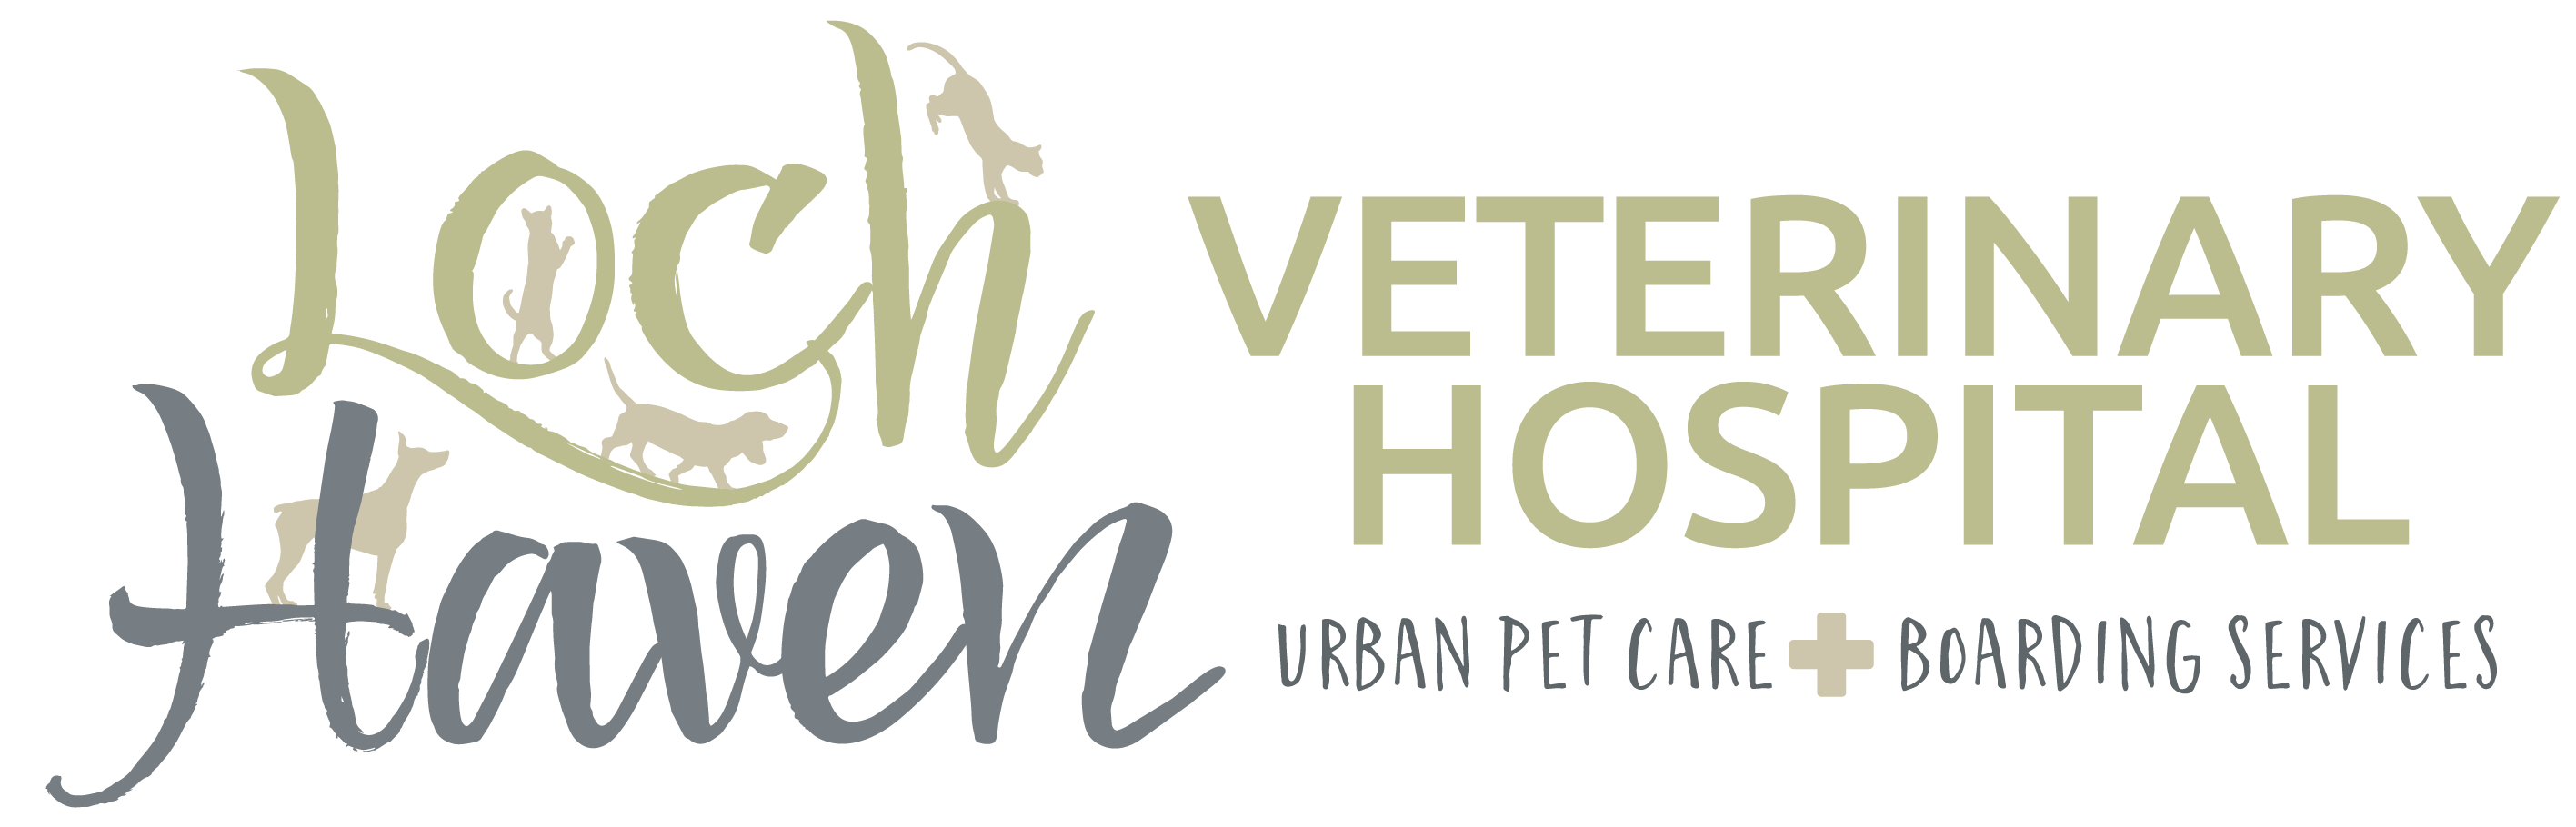 Loch Haven Veterinary Hospital Logo